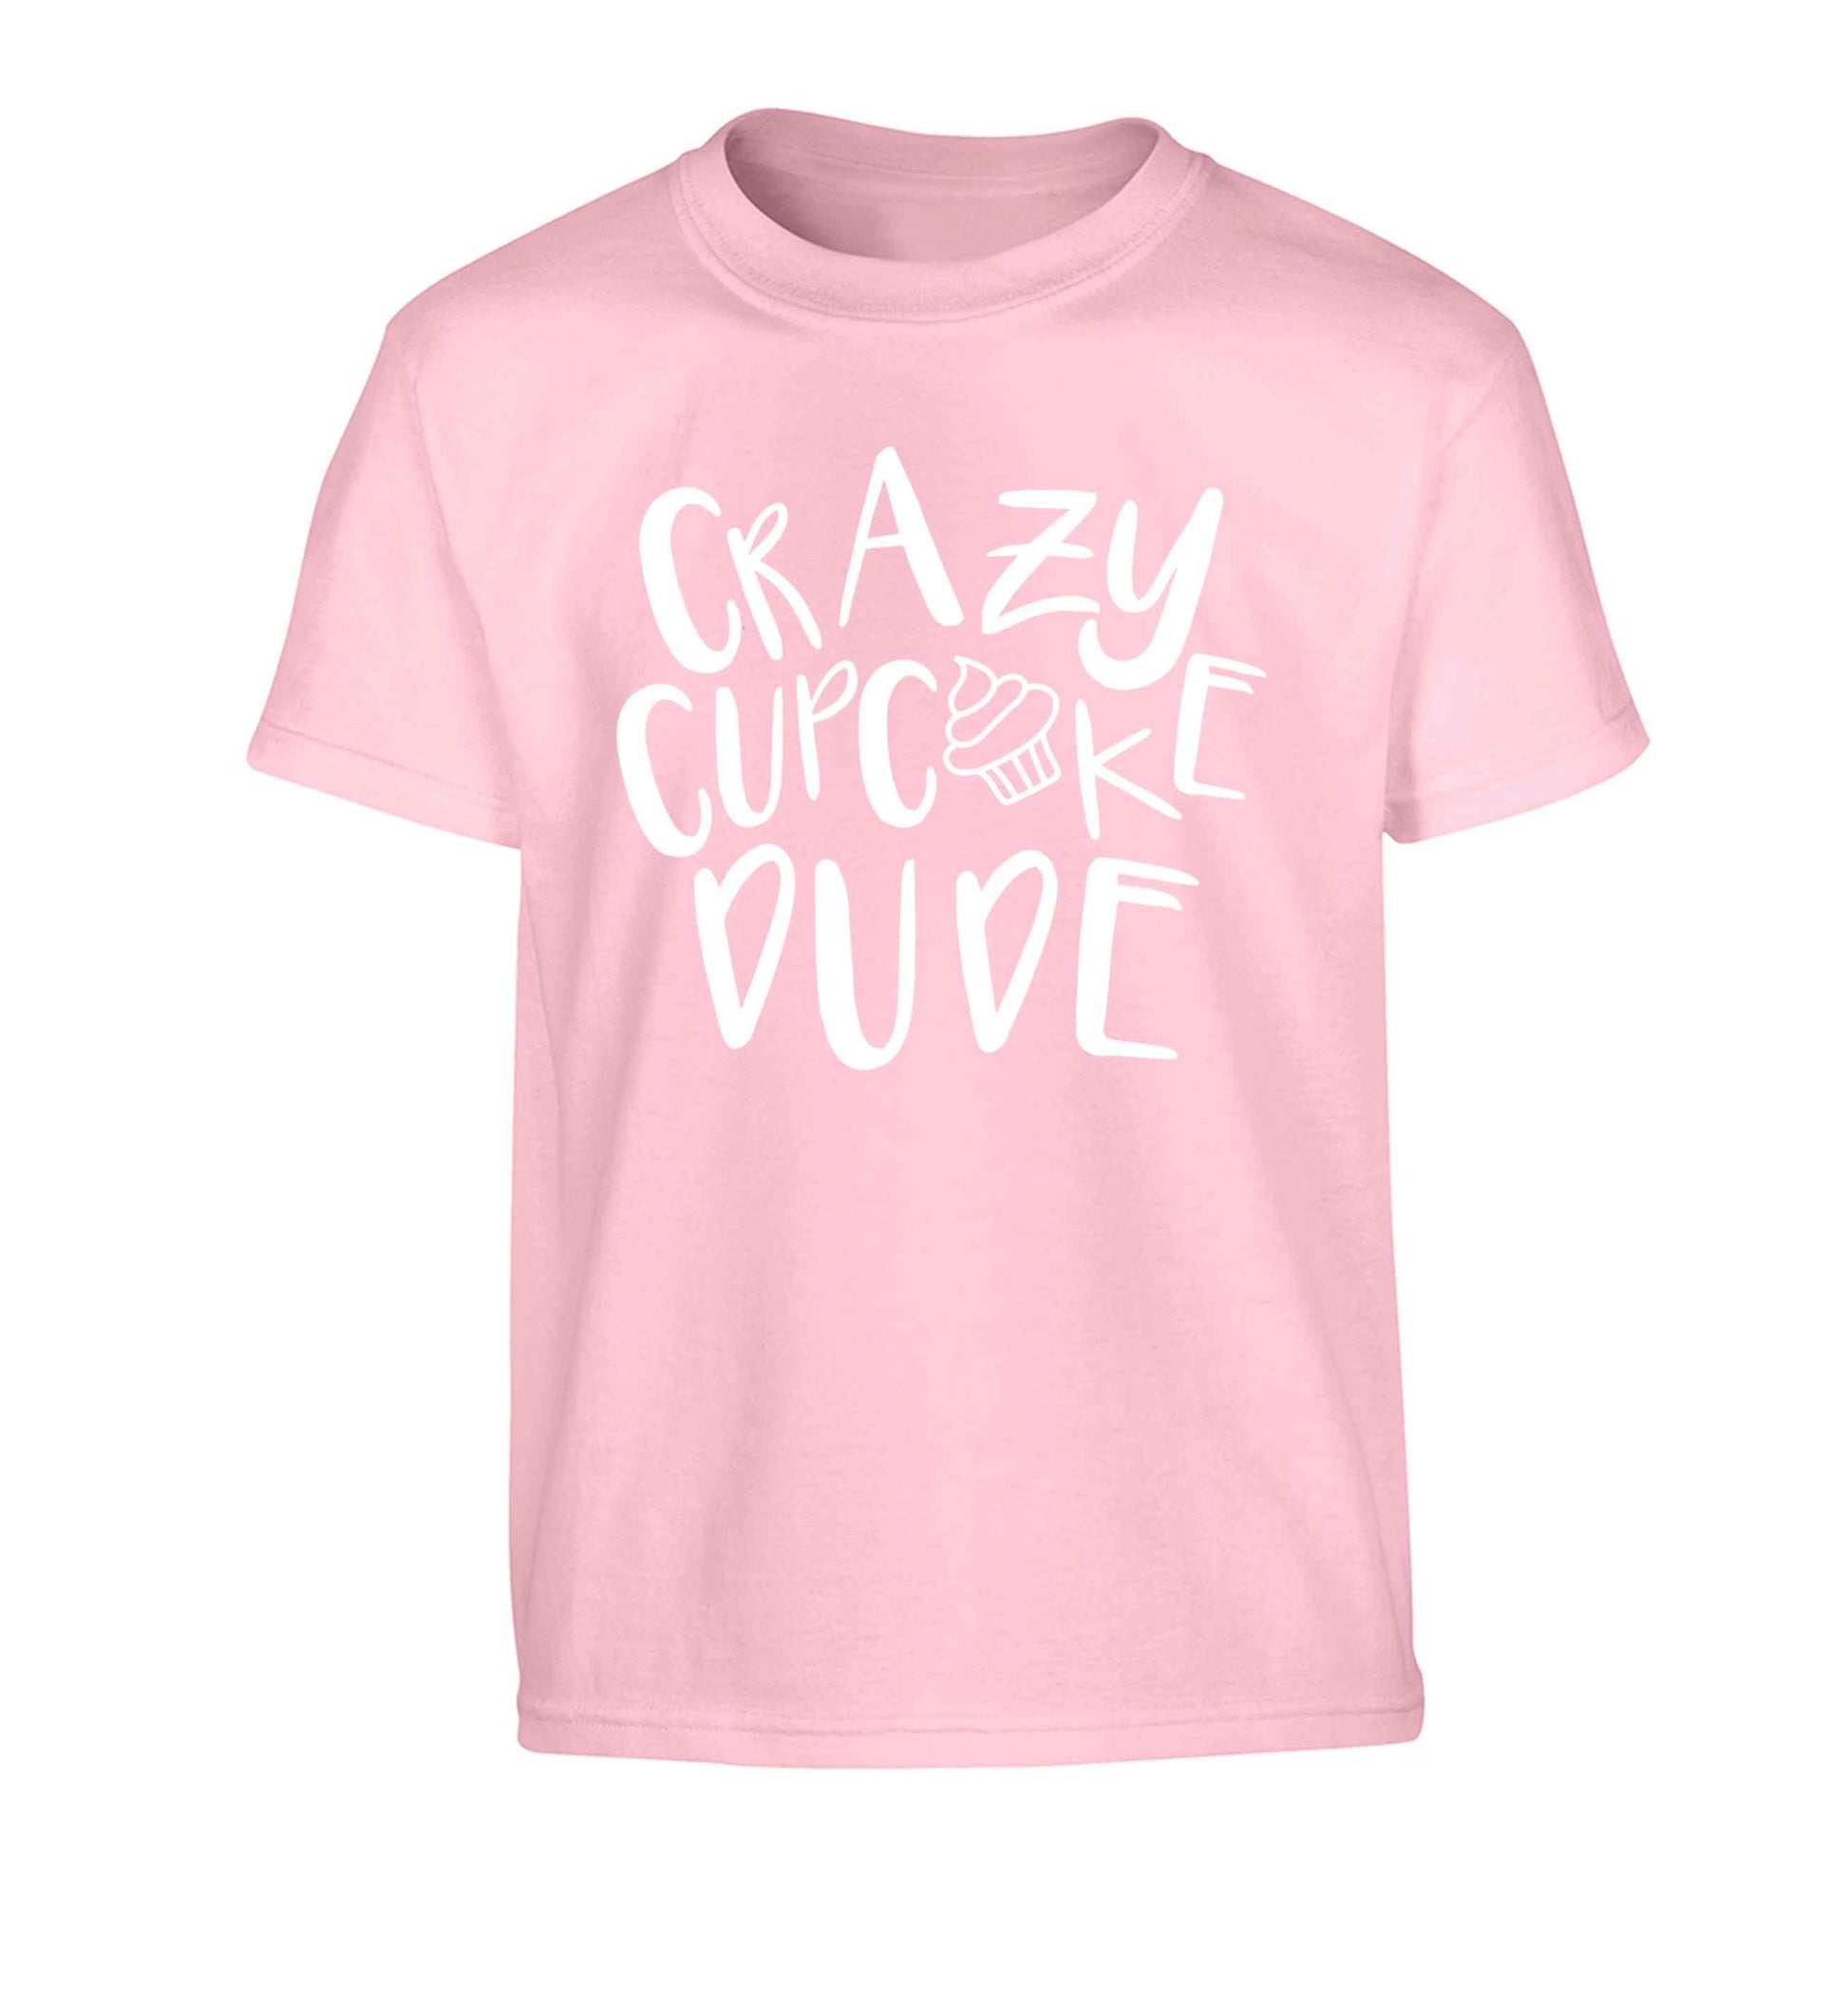 Crazy cupcake dude Children's light pink Tshirt 12-13 Years